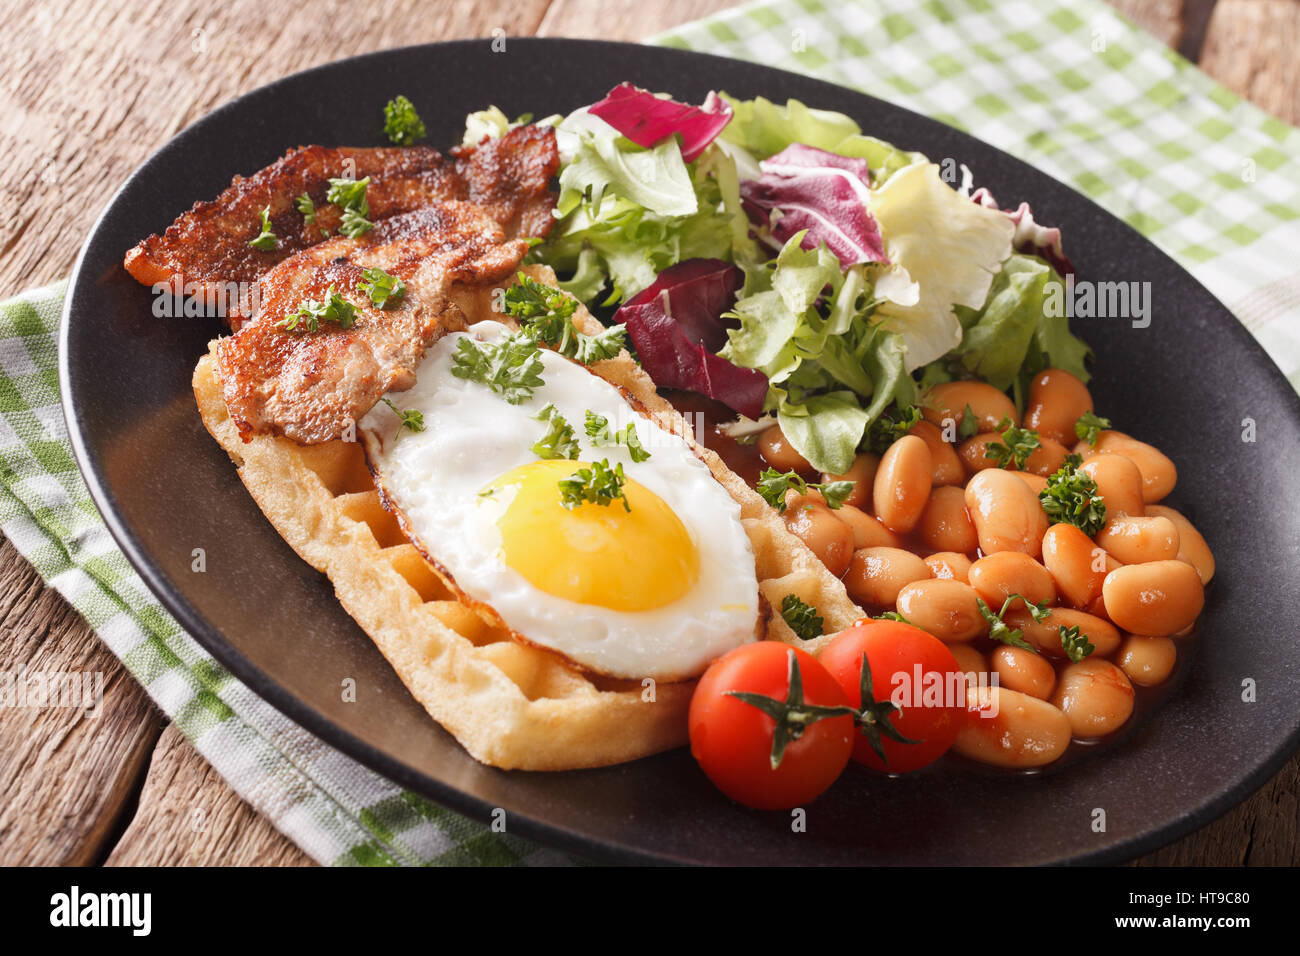 La prima colazione con uovo fritto, waffle, pancetta, mescolare la lattuga e fagioli vicino sul tavolo orizzontale. Foto Stock